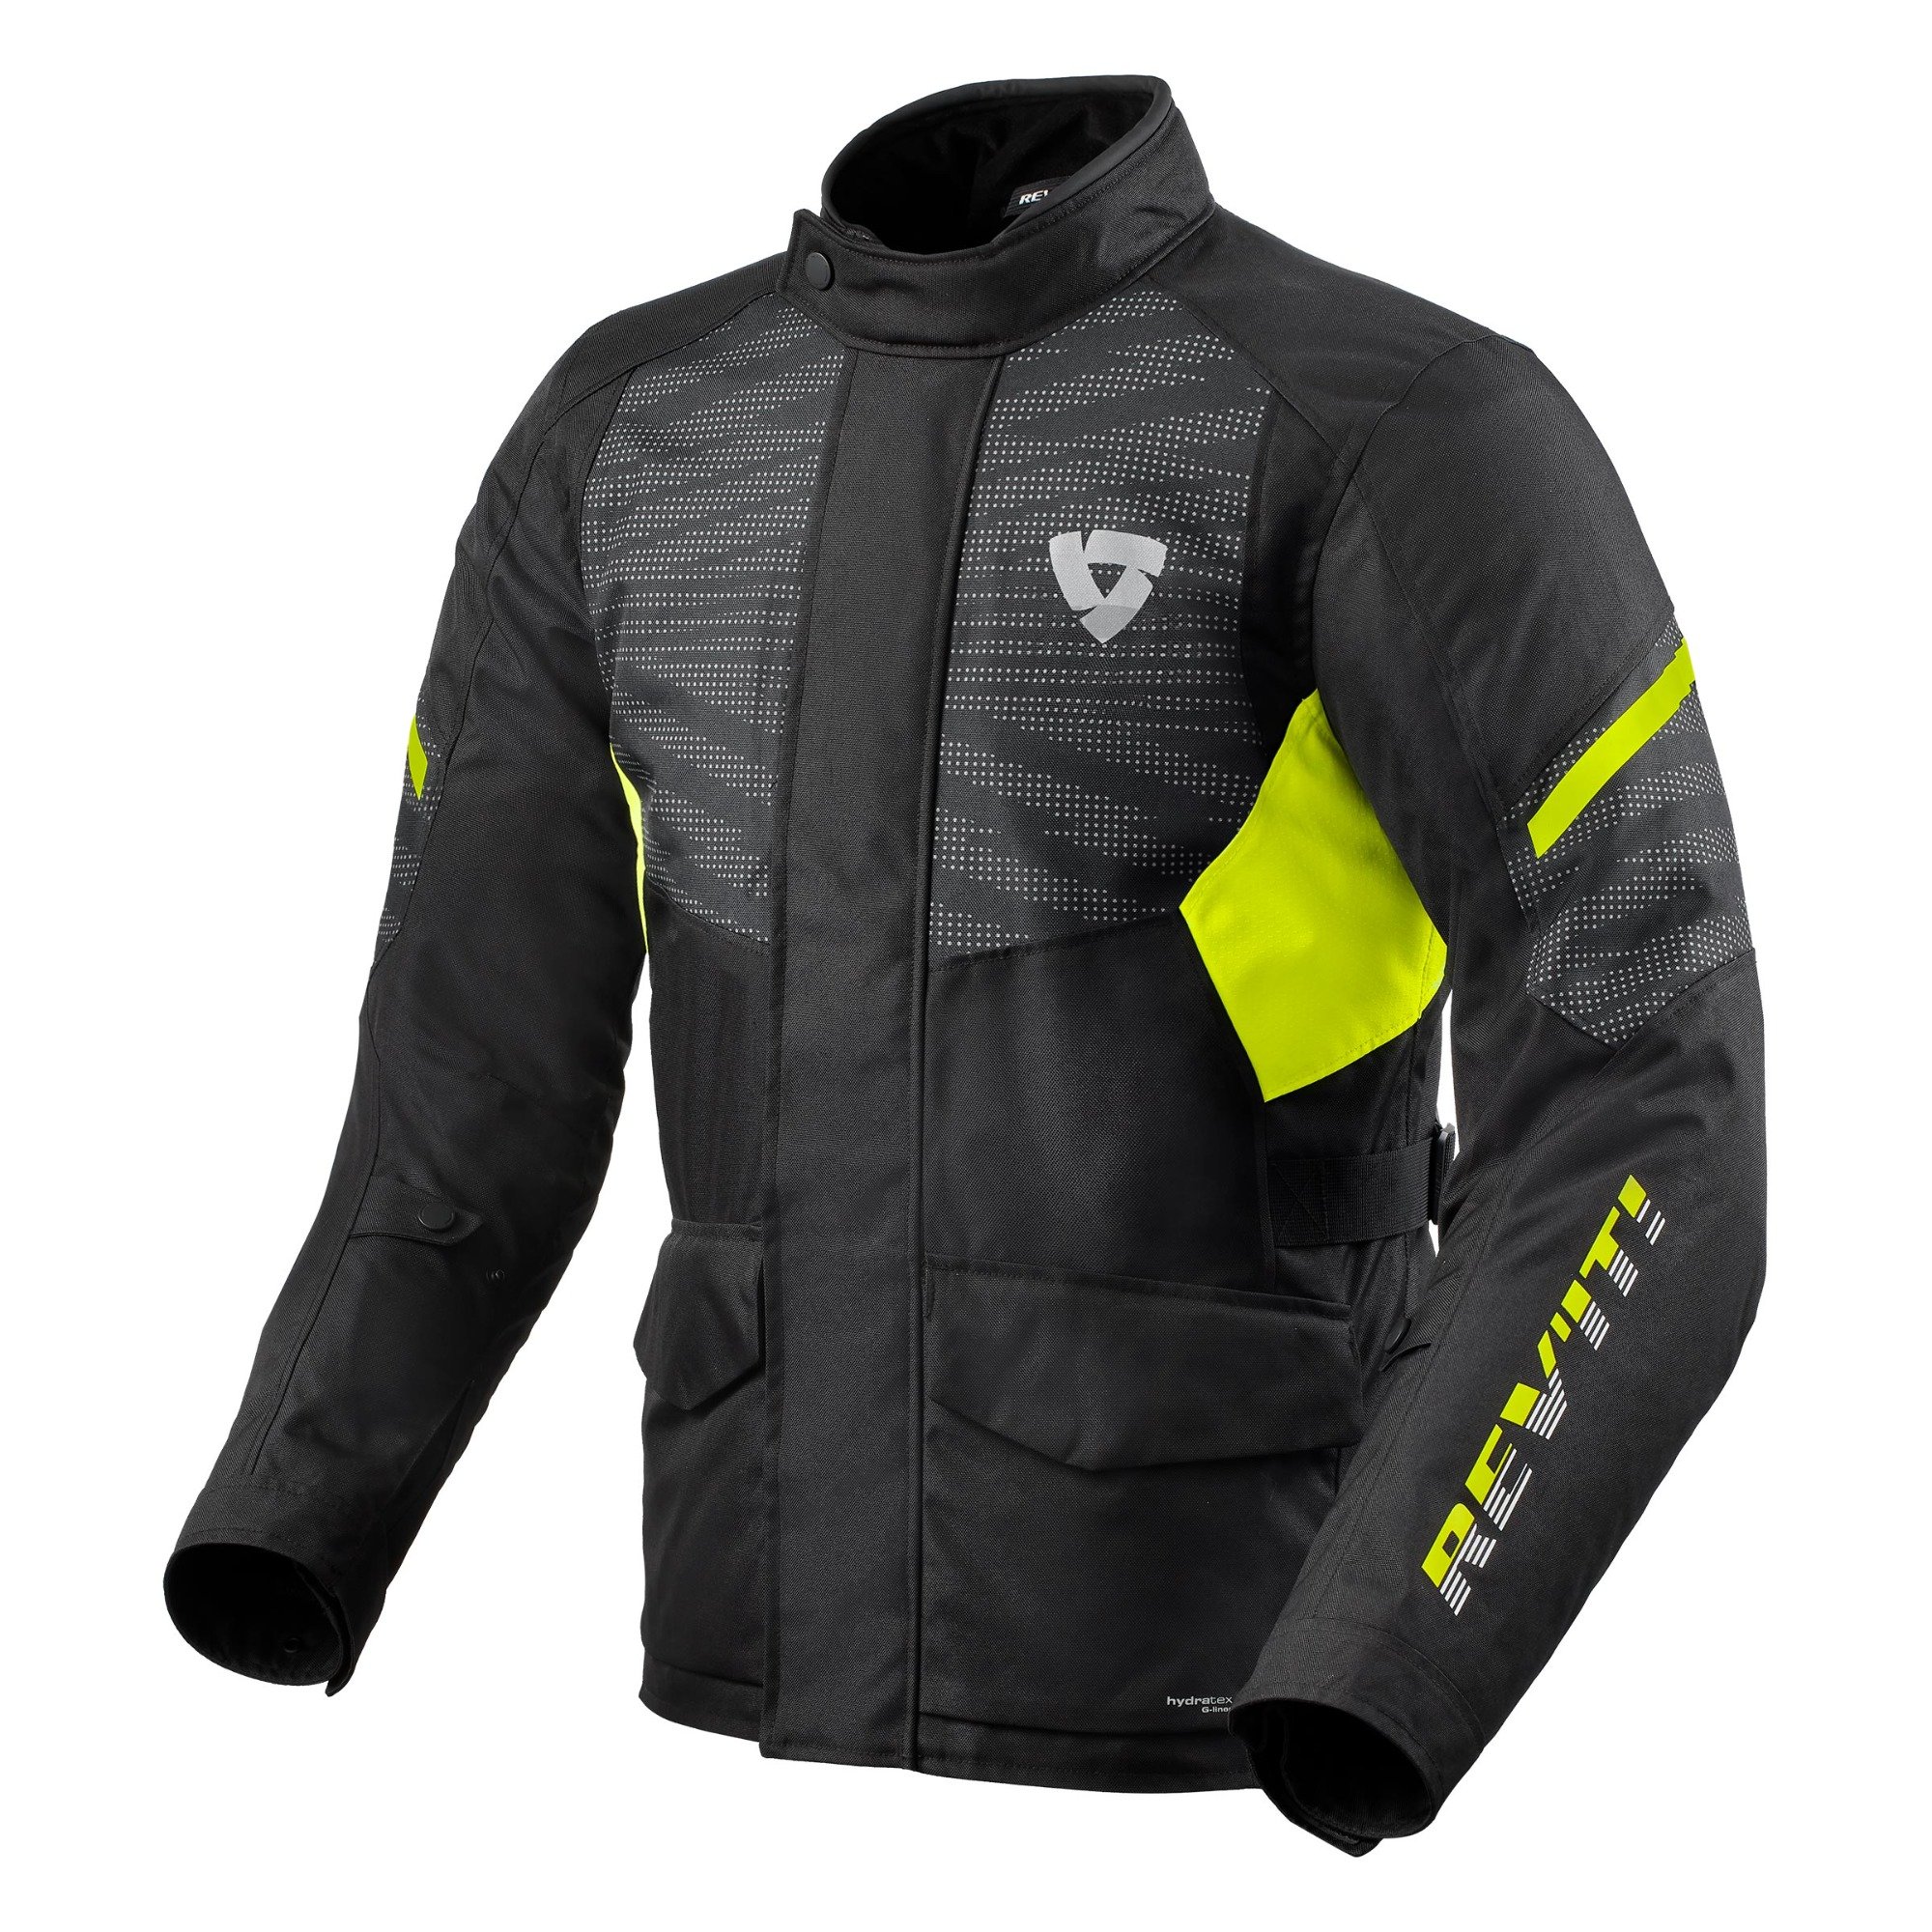 Image of REV'IT! Duke H2O Jacket Black Neon Yellow Size 4XL EN